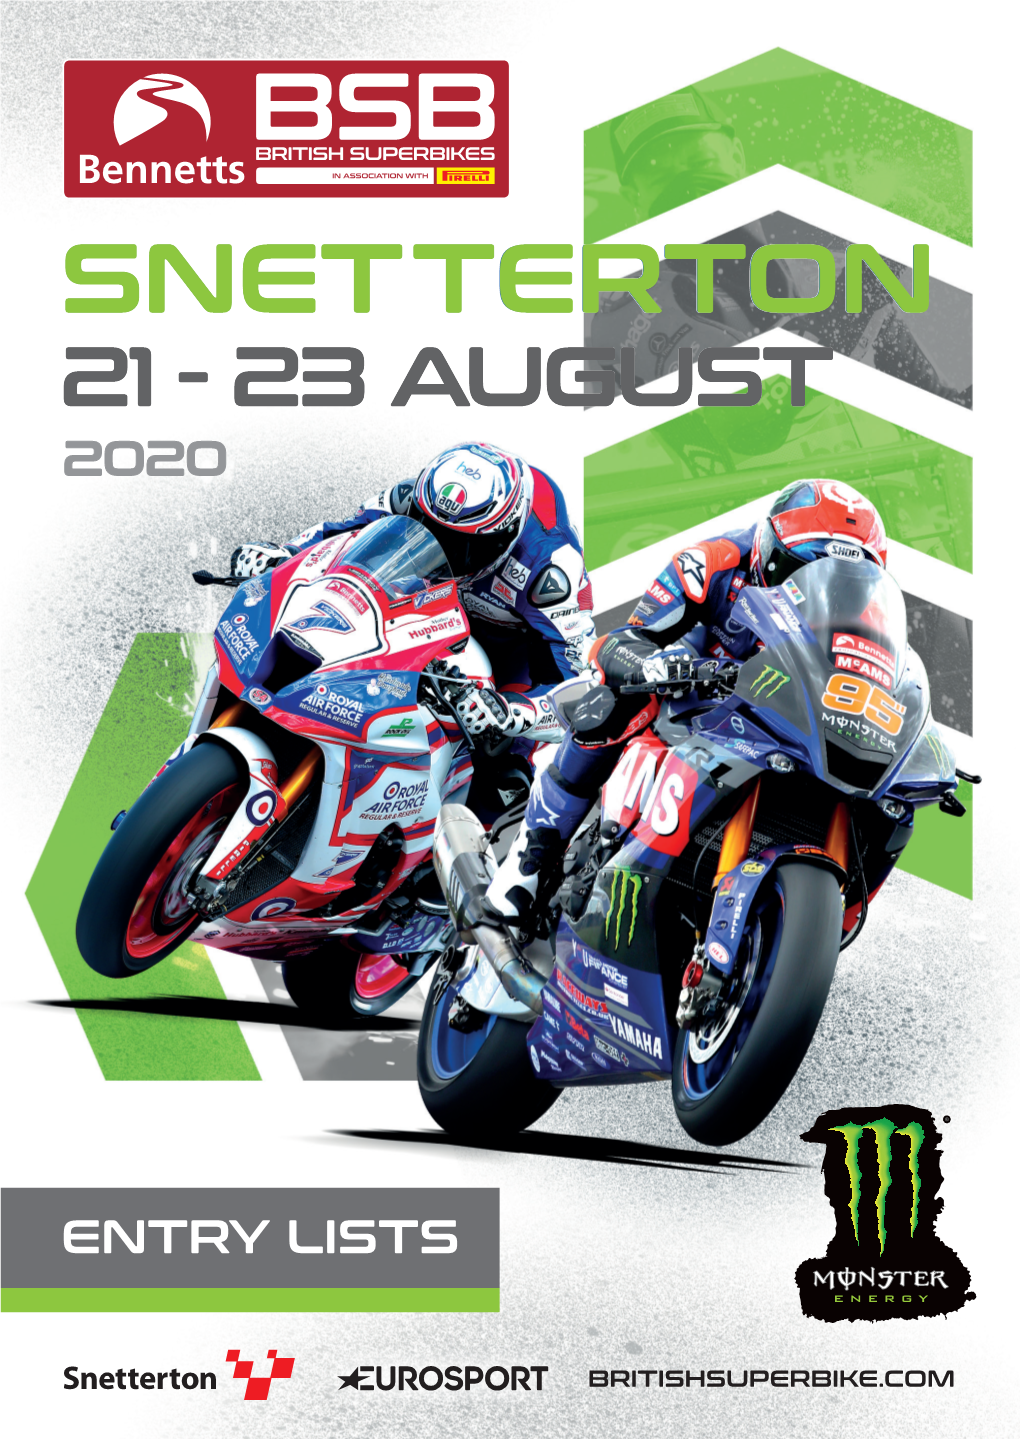 Snetterton 21 - 23 August 2020